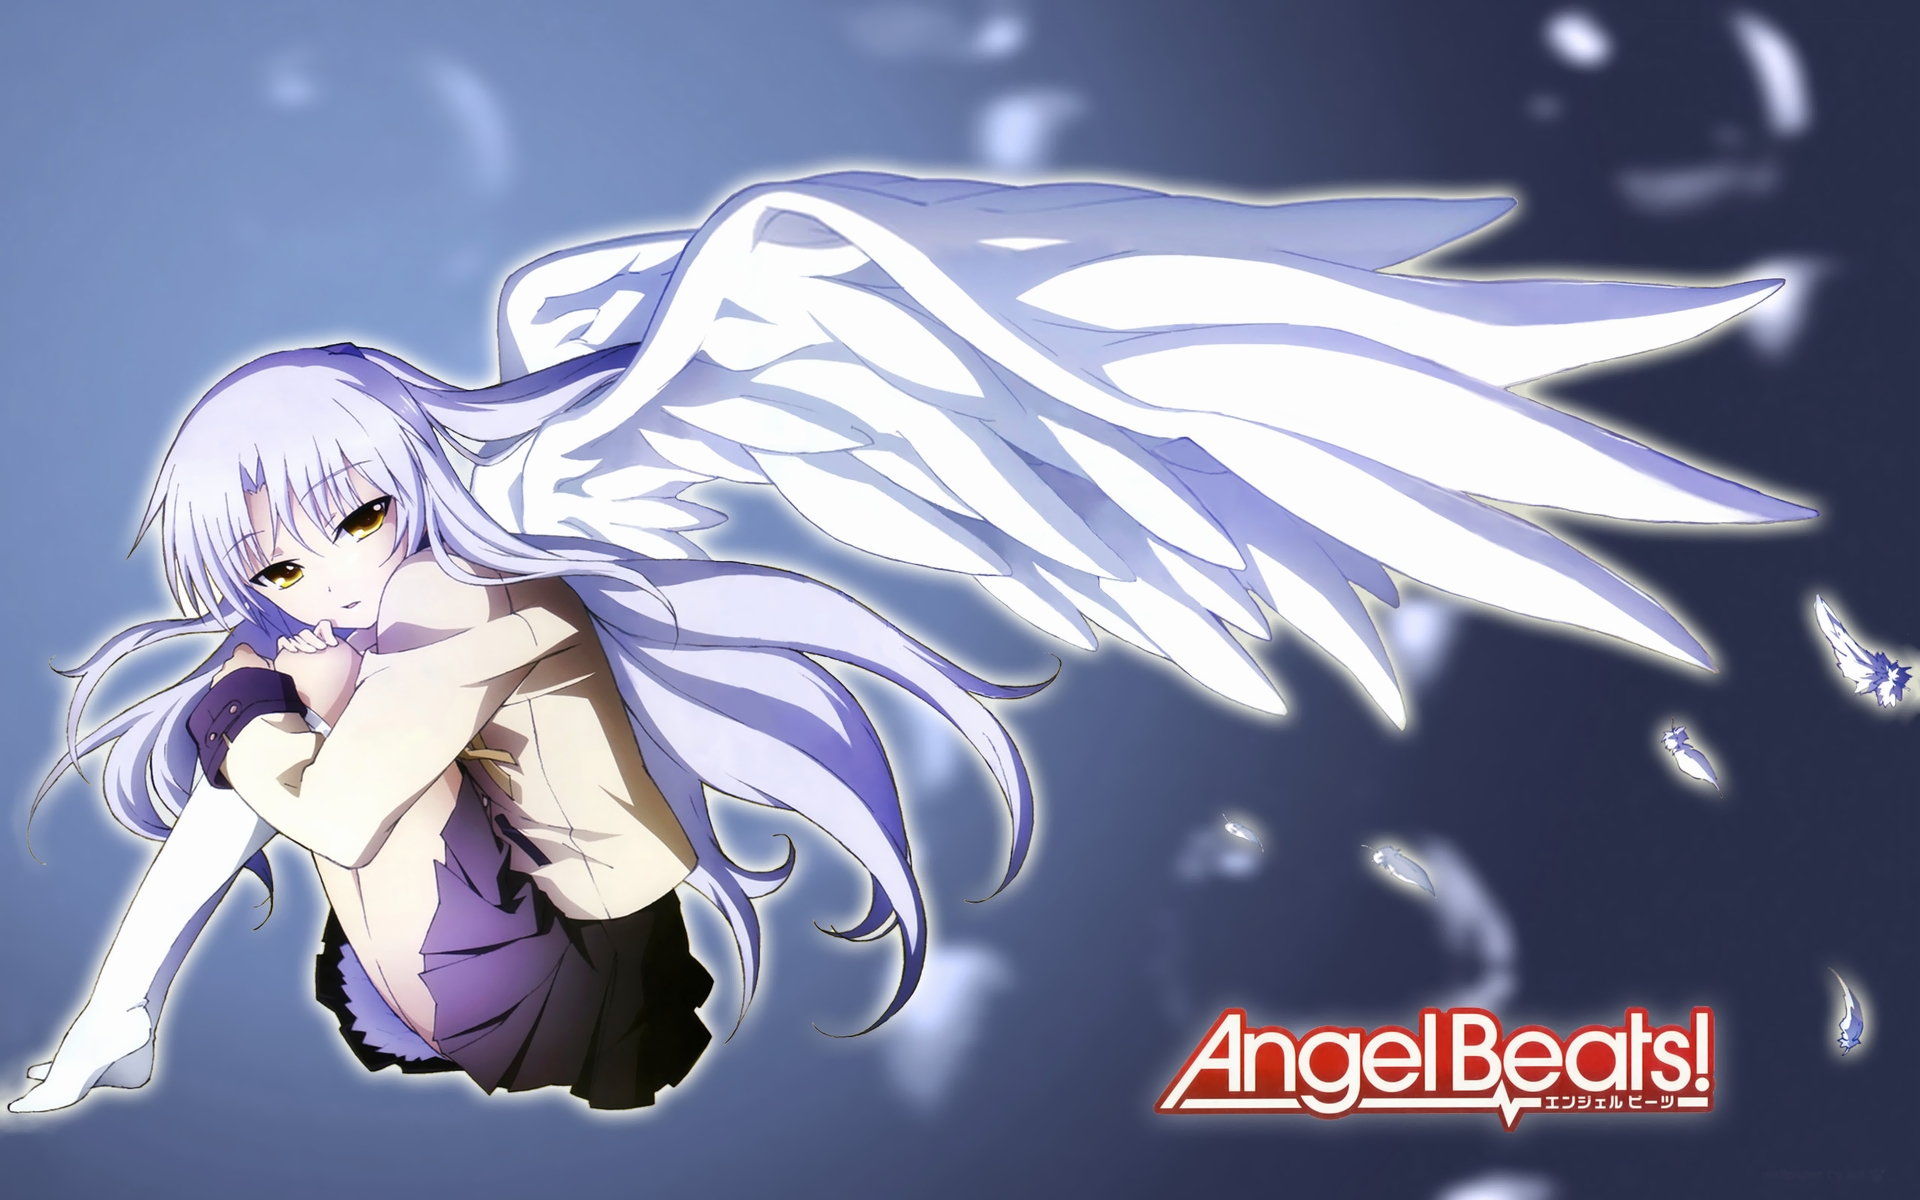 Kanade Tachibana from the anime Angel Beats!